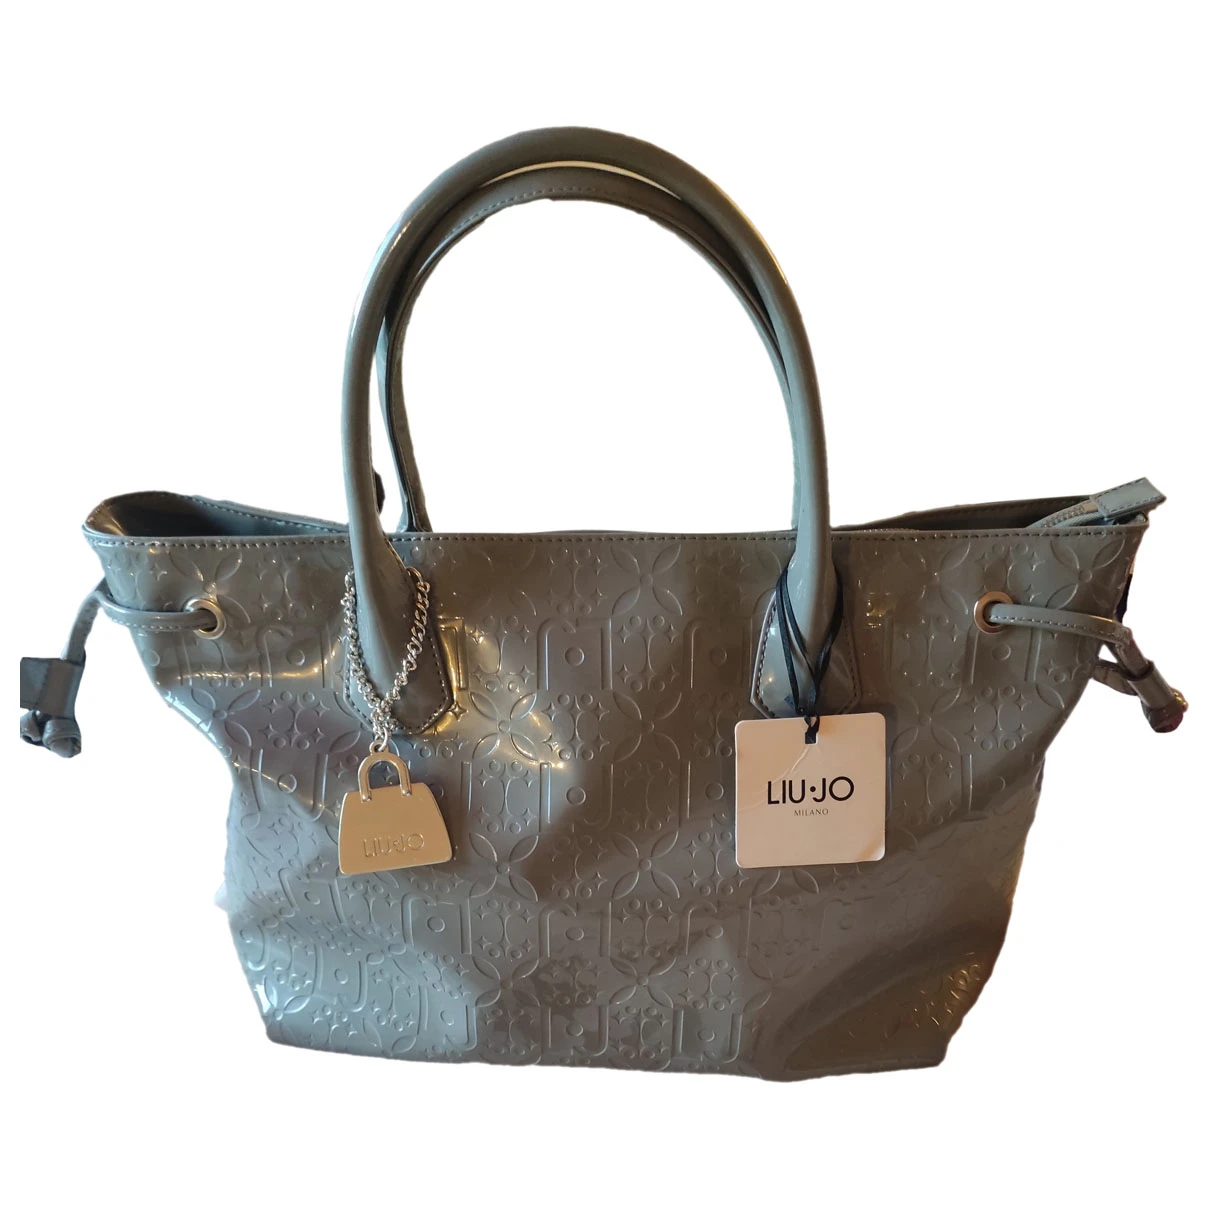 Pre-owned Liujo Vegan Leather Handbag In Grey